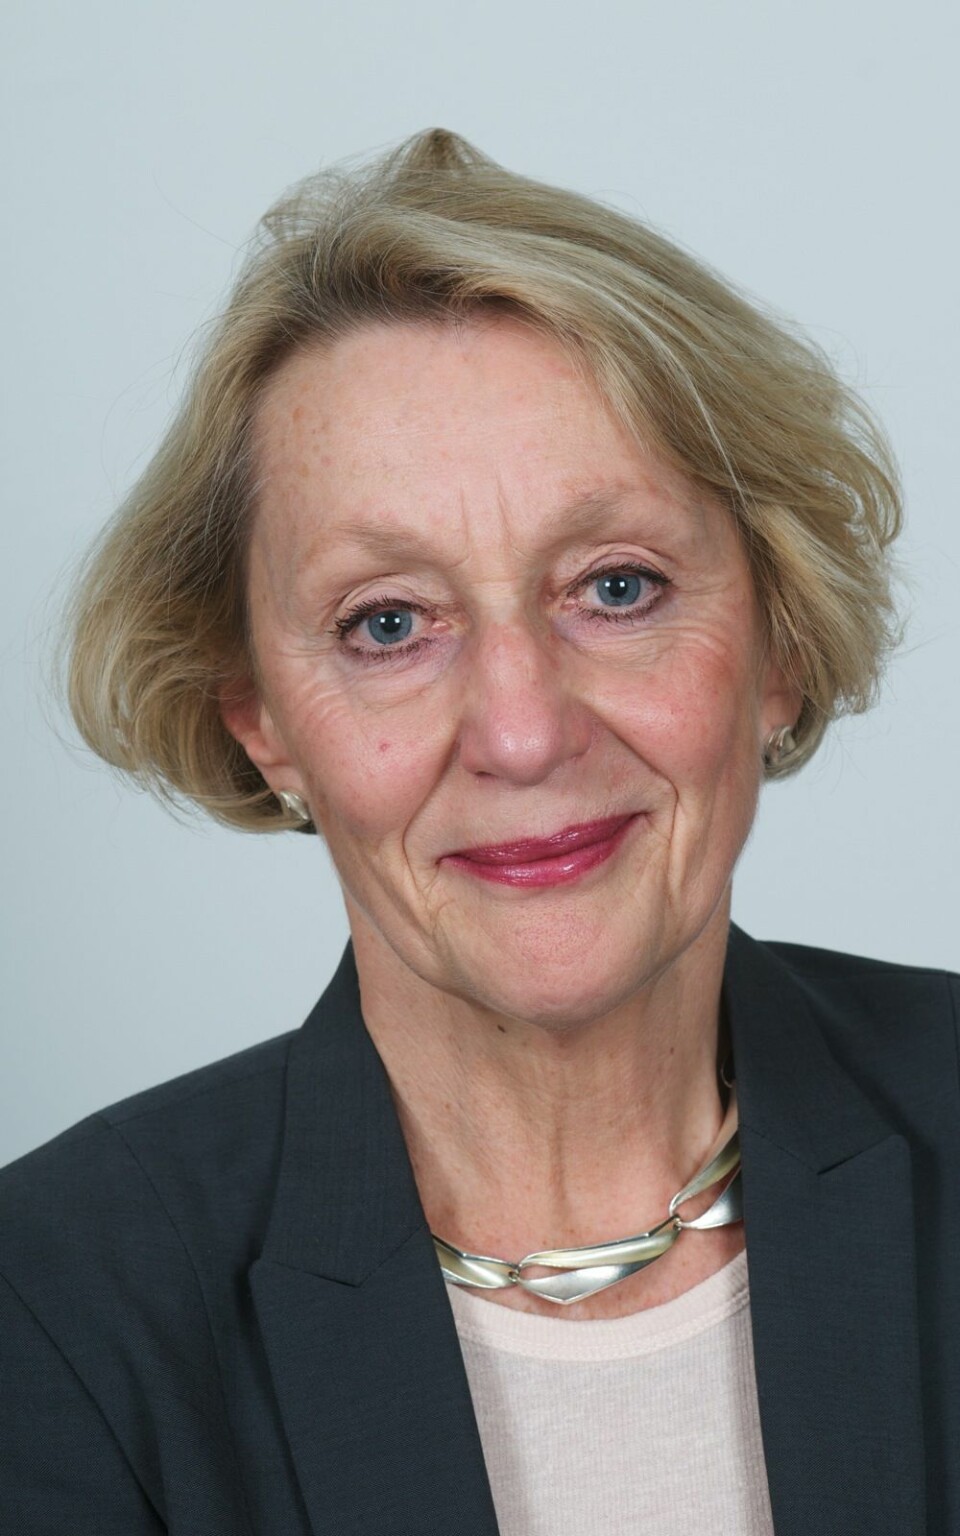 Professor Anne Inger Helmen Borge er påtroppende leder i Forskningsetisk utvalg ved Universitetet i Oslo. (Foto: Universitet i Oslo)